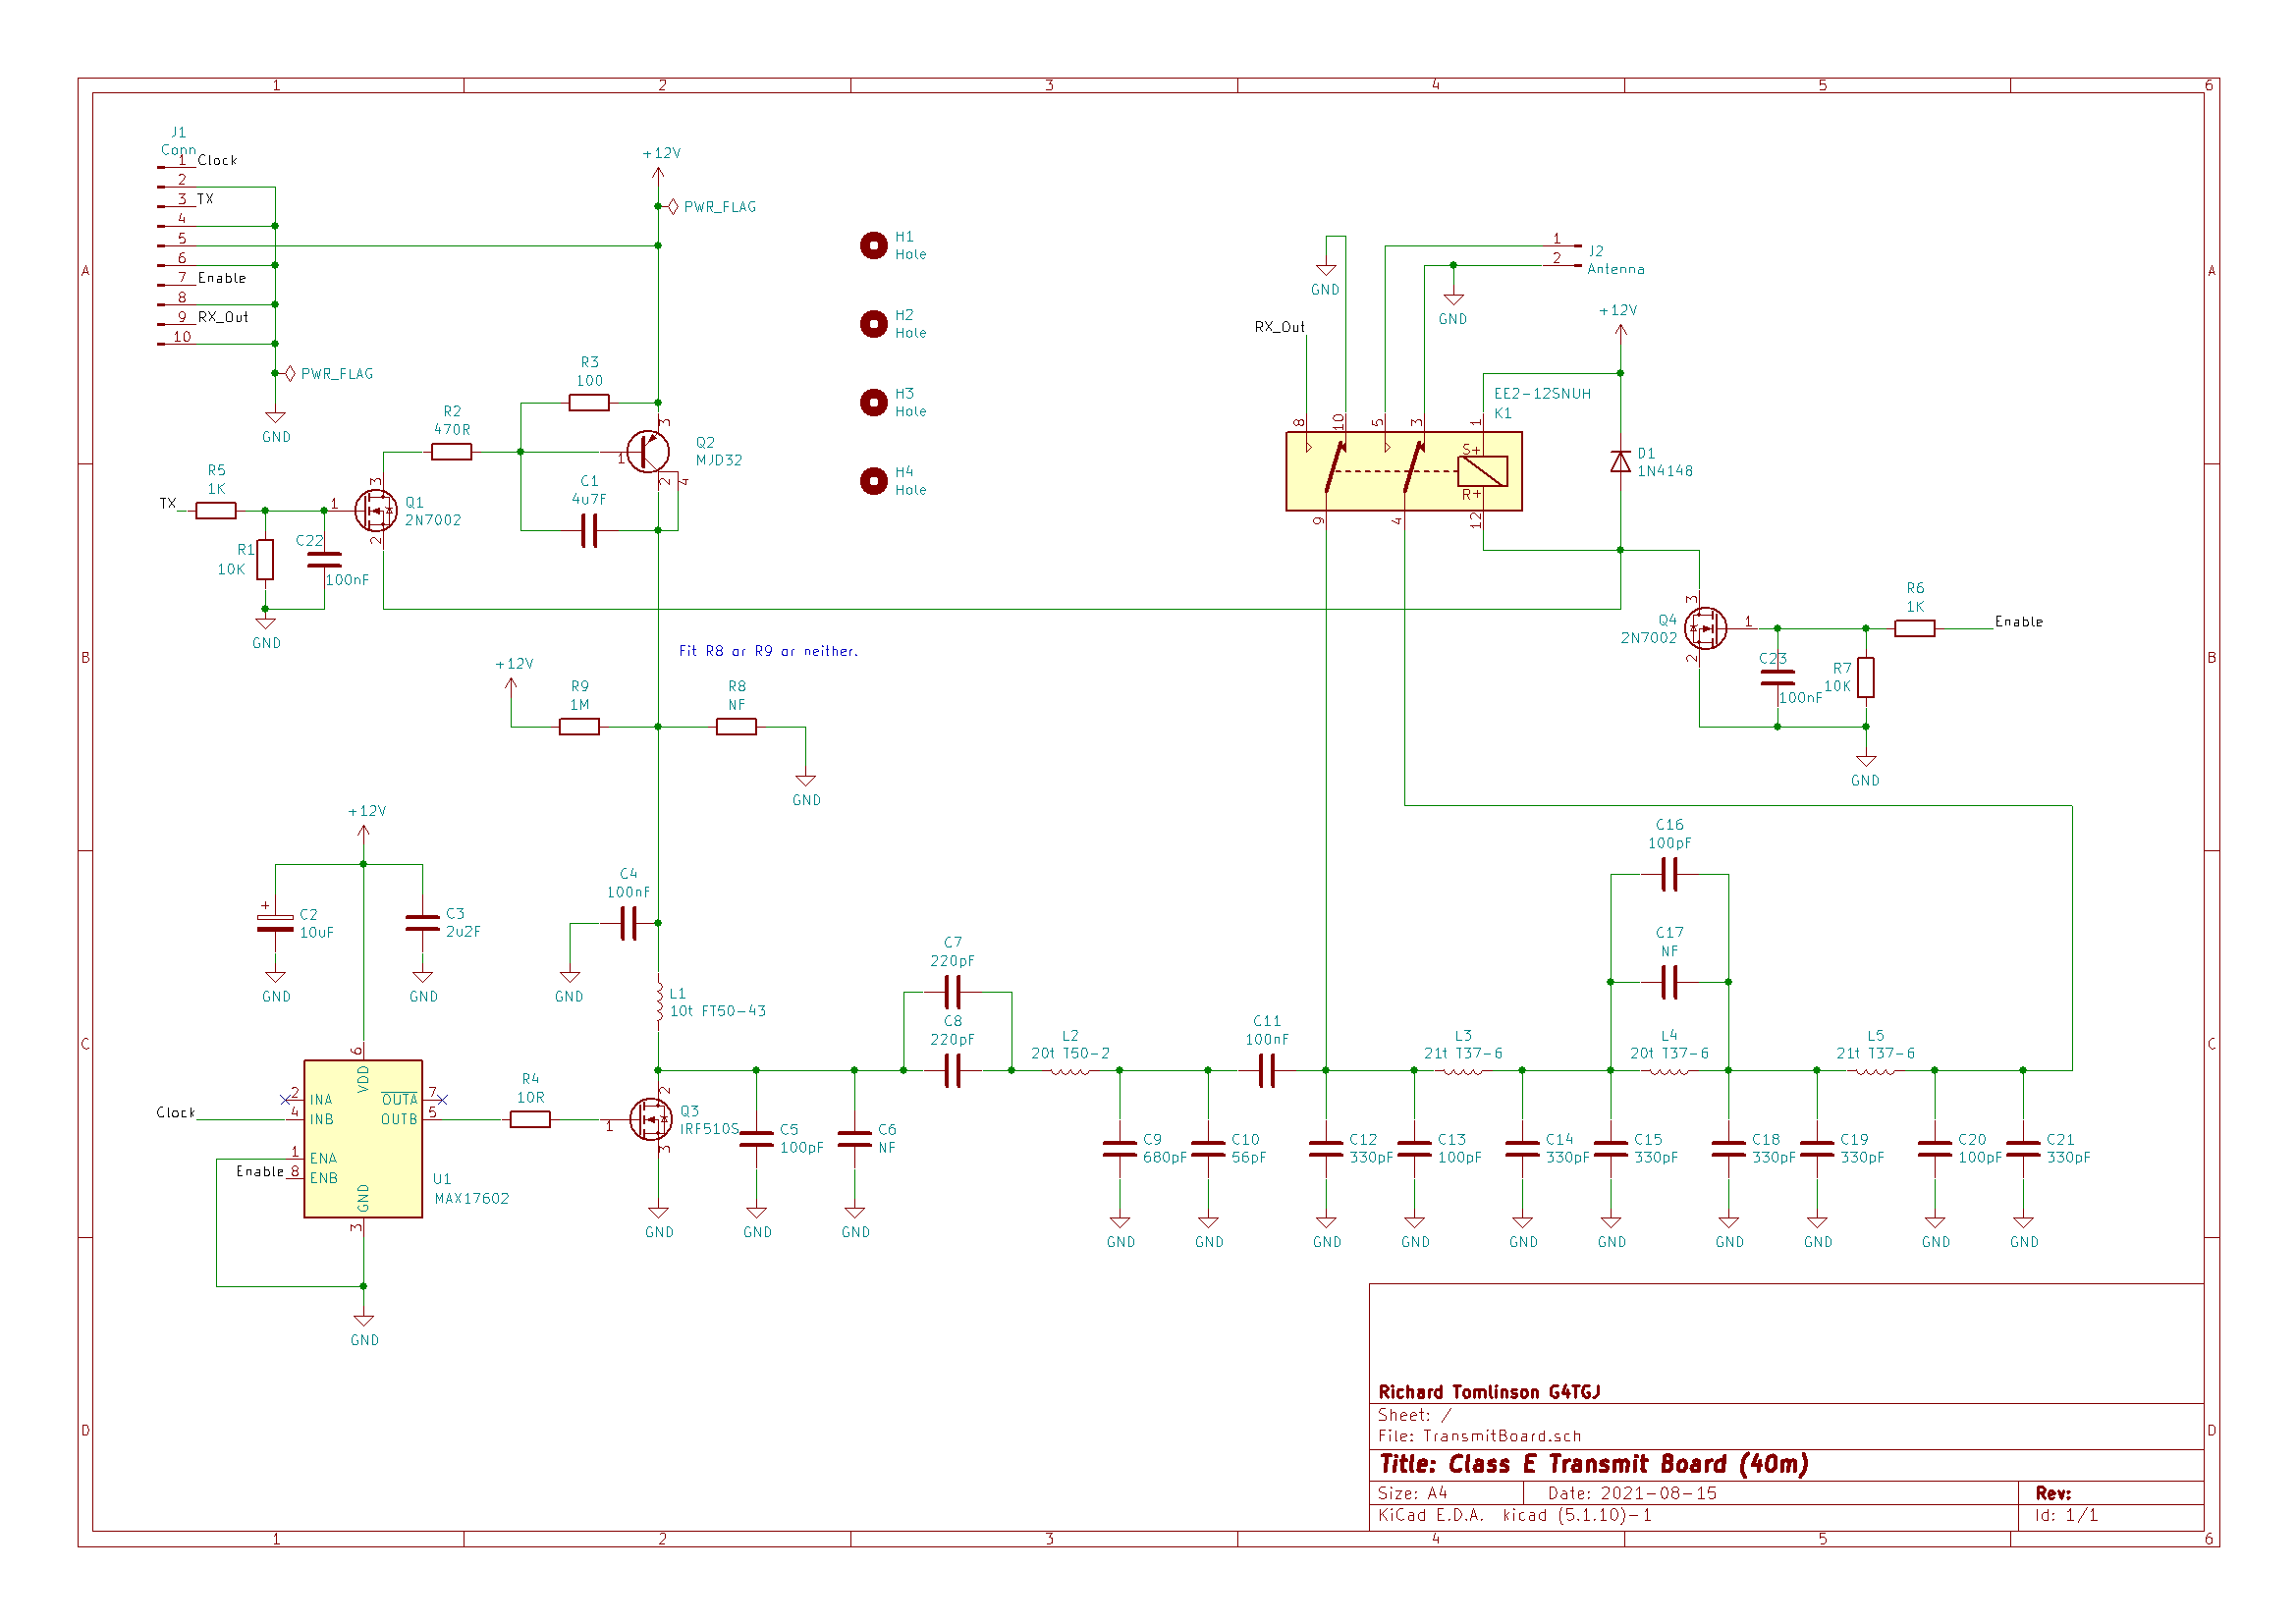 Transmit Board schematic